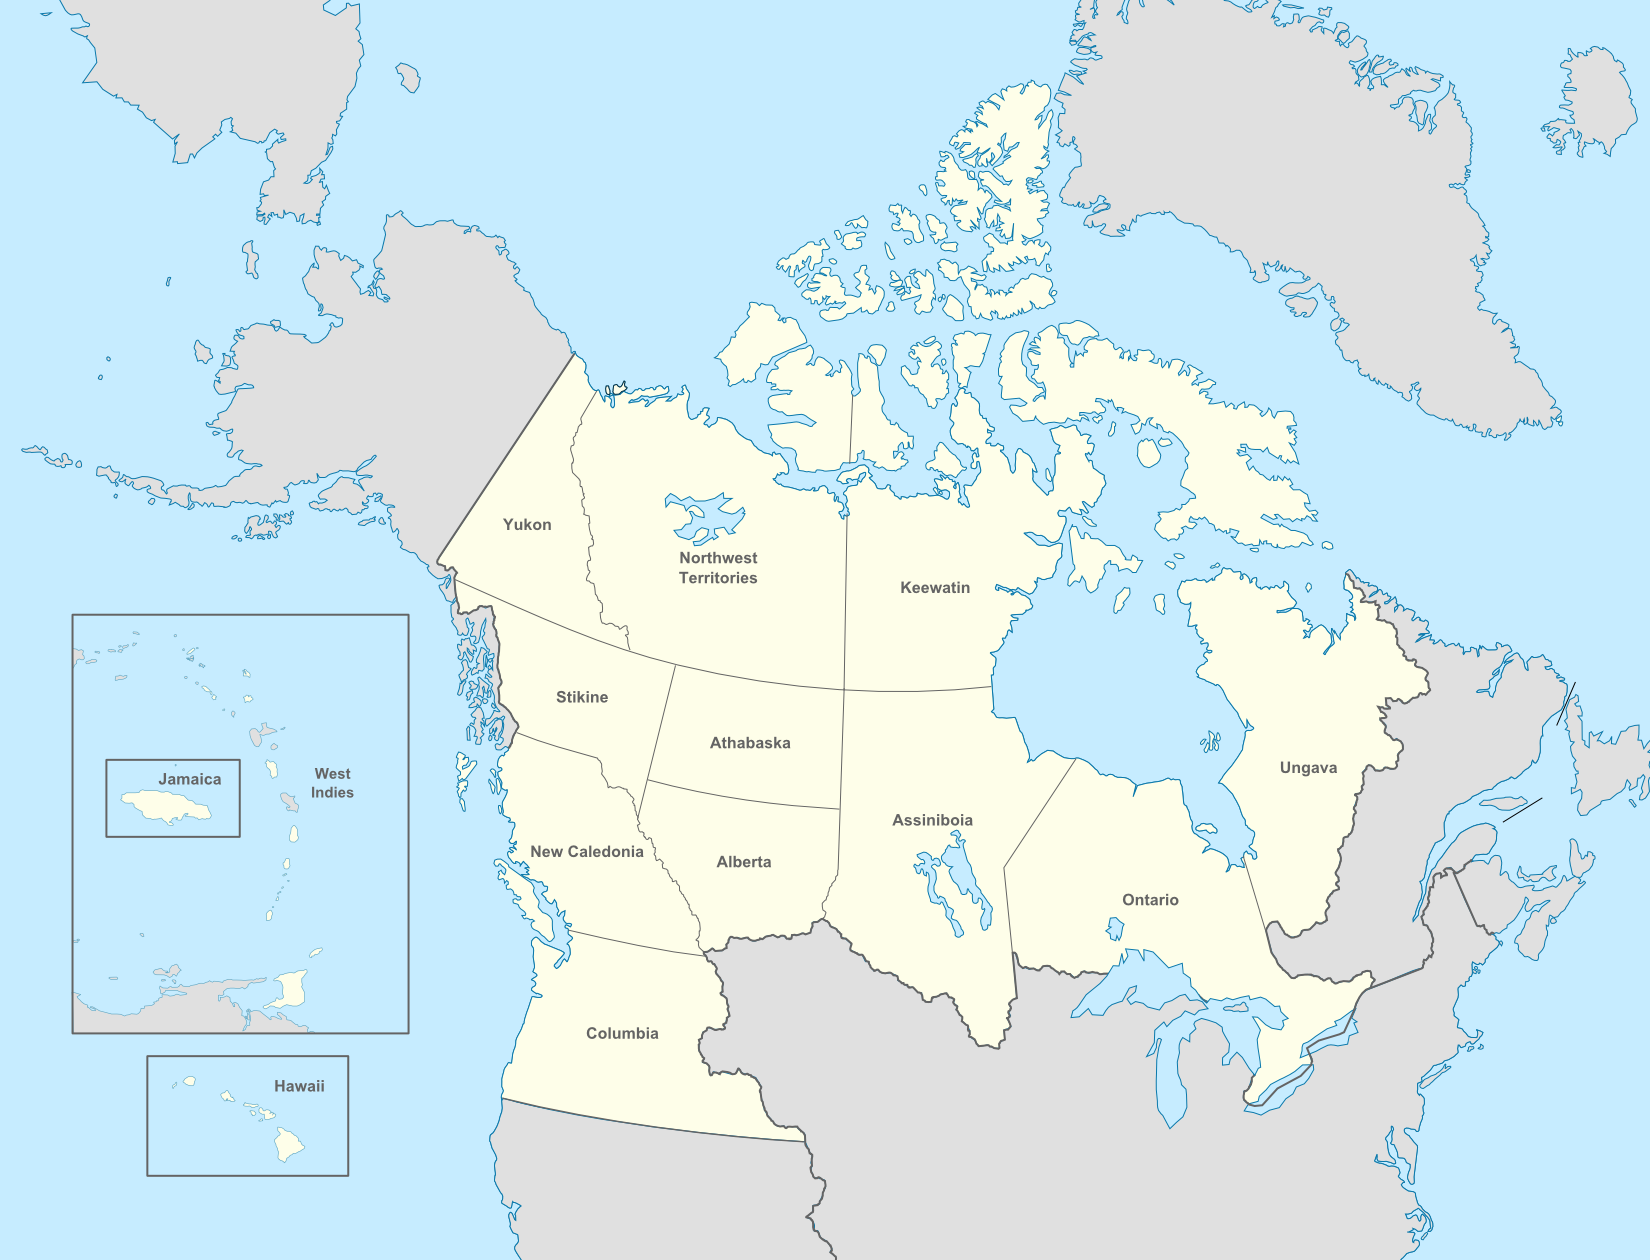 Округи колумбии. Округ Колумбия на карте. Юкон Канада на карте. Полуостров Унгава на карте Северной Америки. Северная Америка - федеральный округ Колумбия (США на карте.